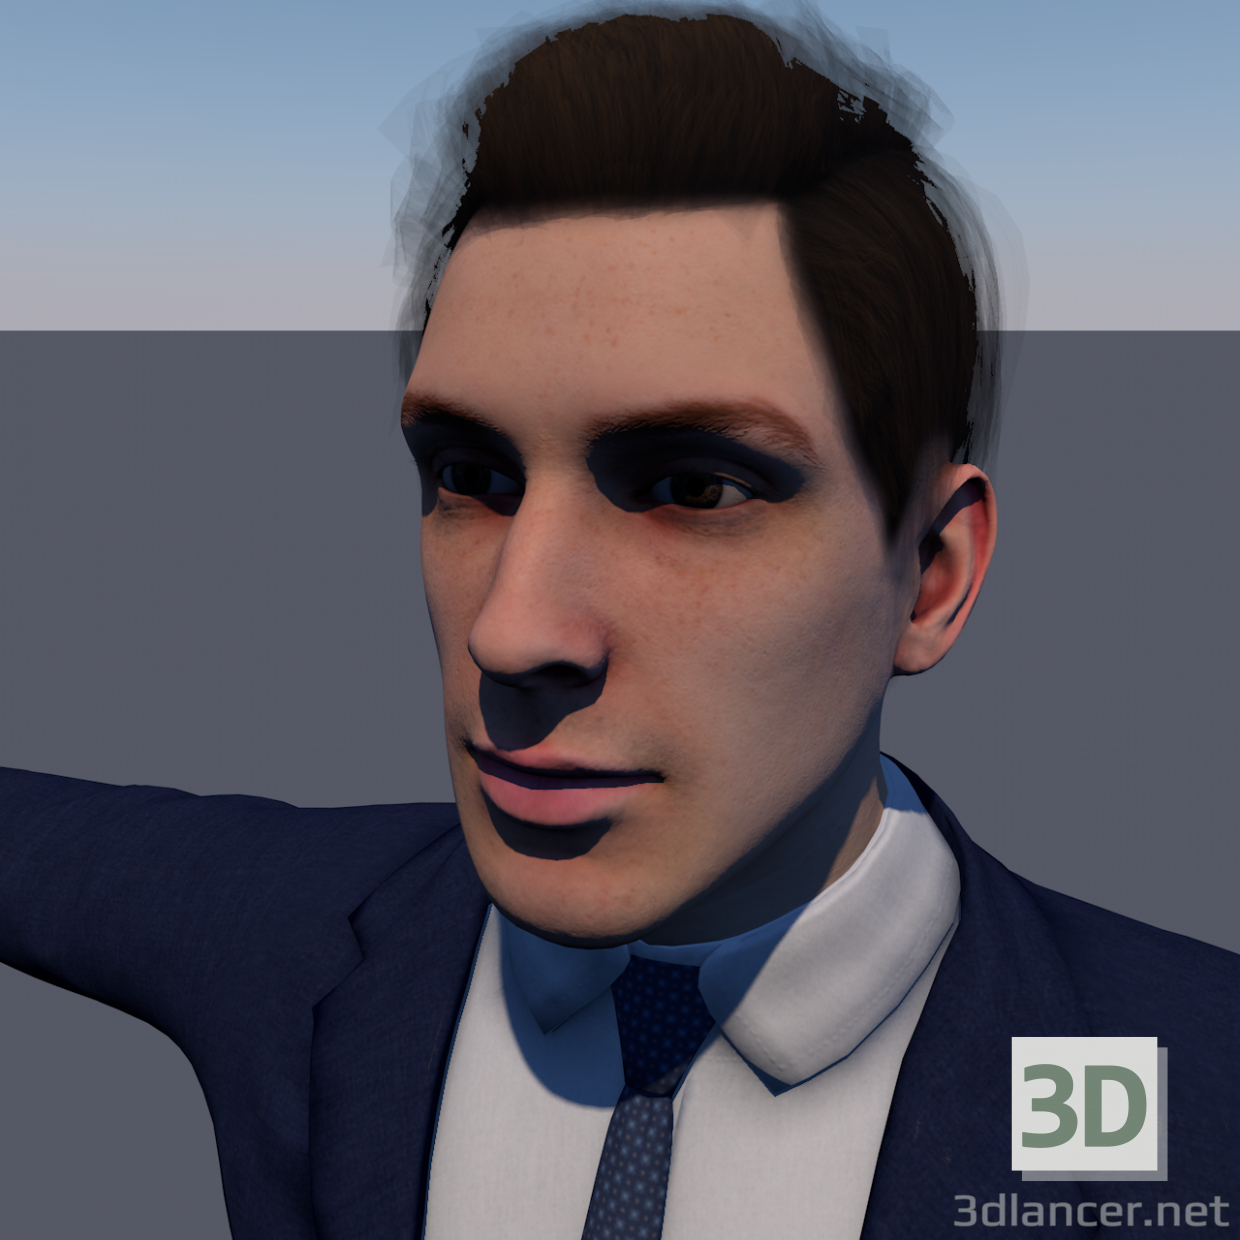 modèle 3D de Personnage homme modèle 3D Low-poly acheter - rendu